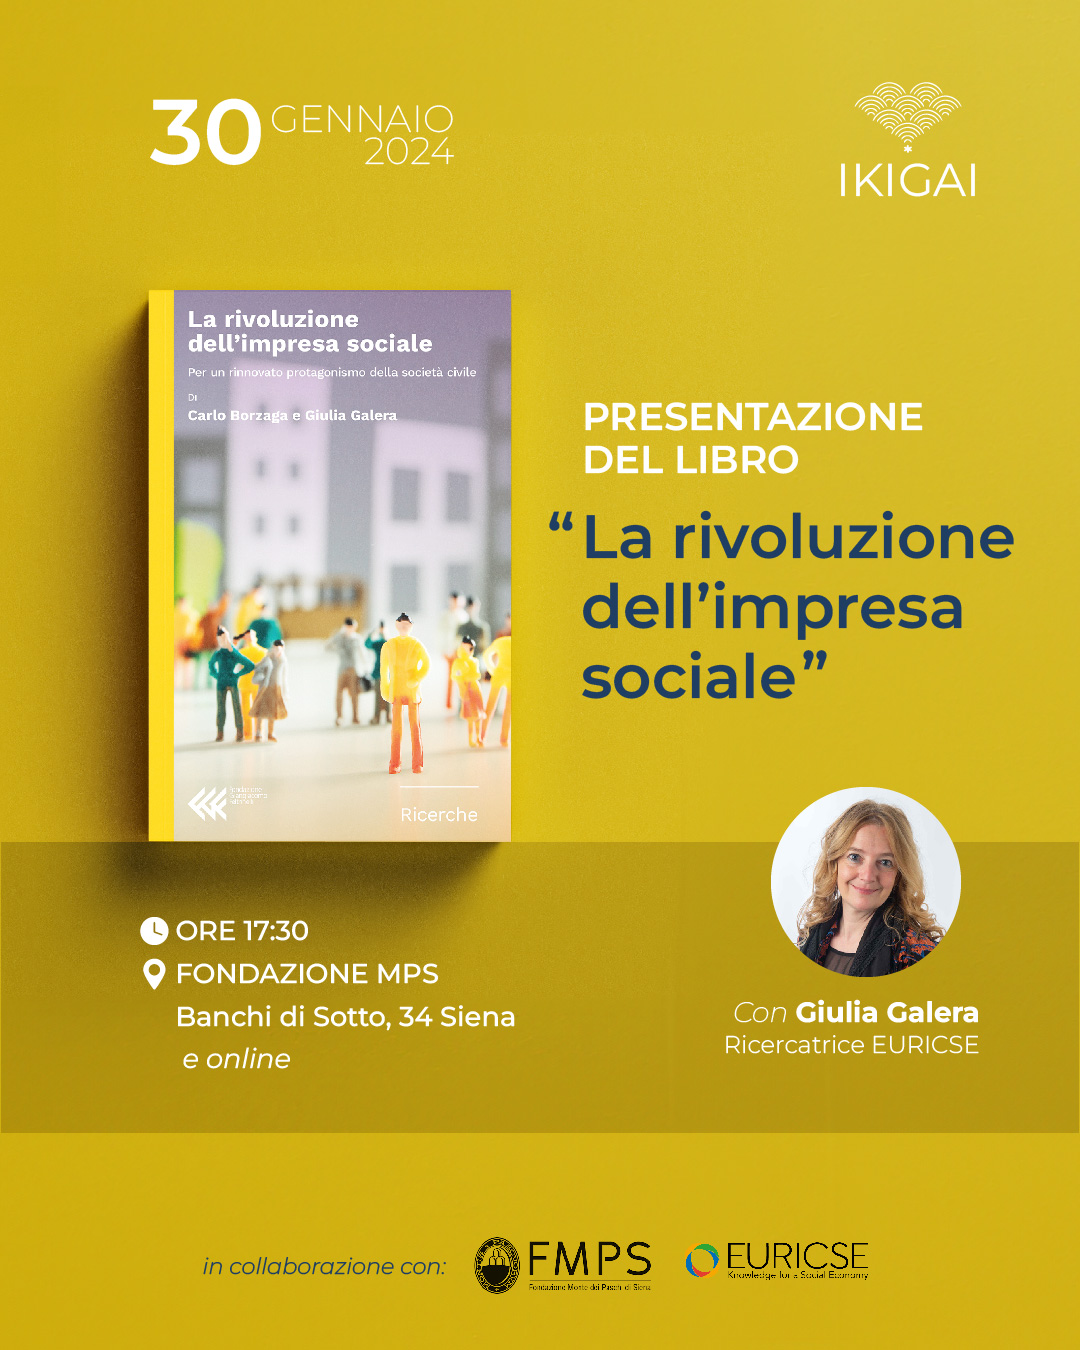 La rivoluzione dell’Impresa Sociale : a Siena la presentazione